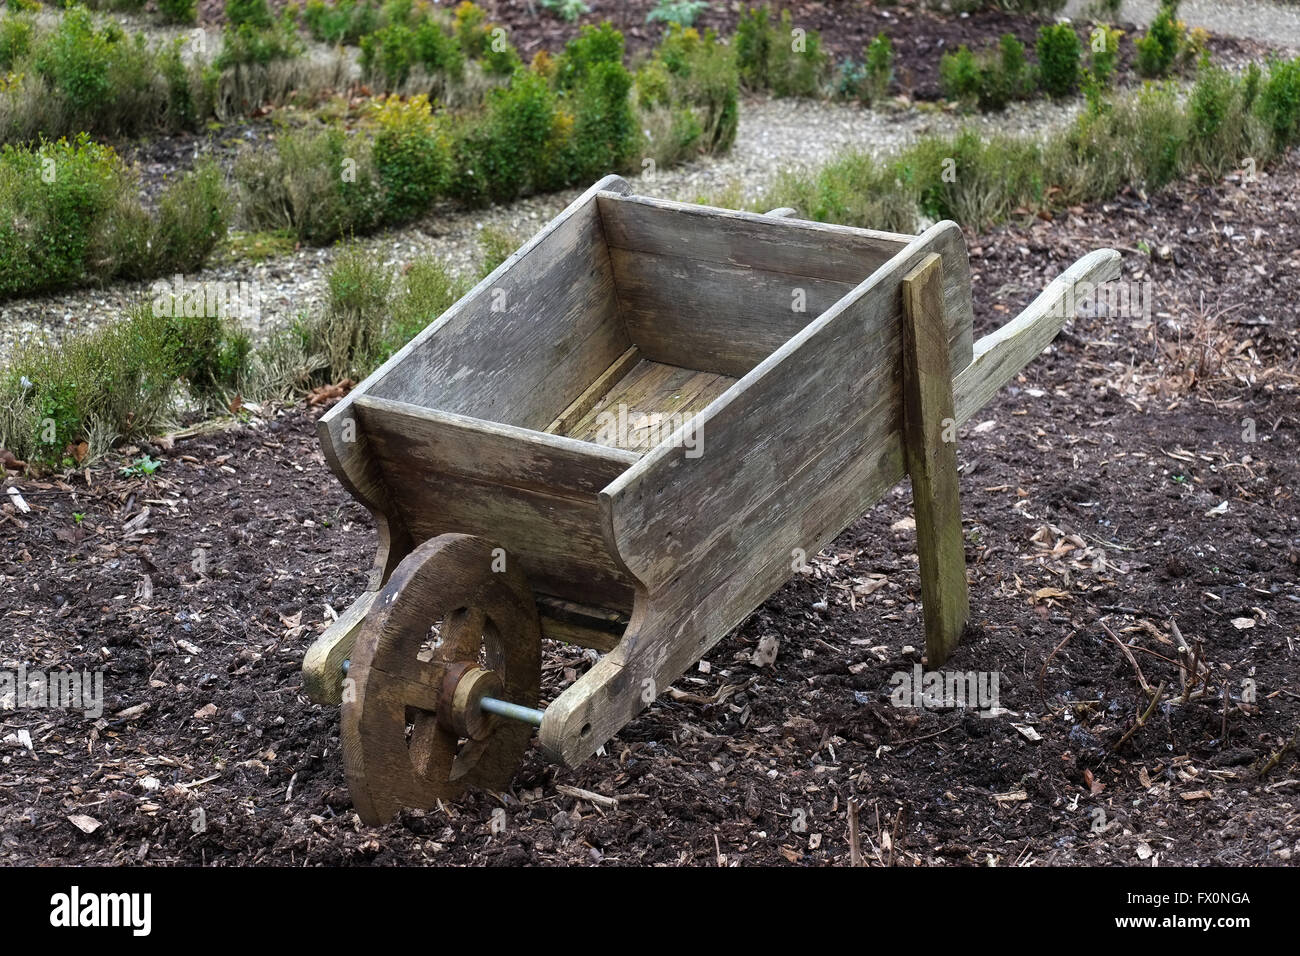 Old wooden wheelbarrow in large garden. Stock Photo